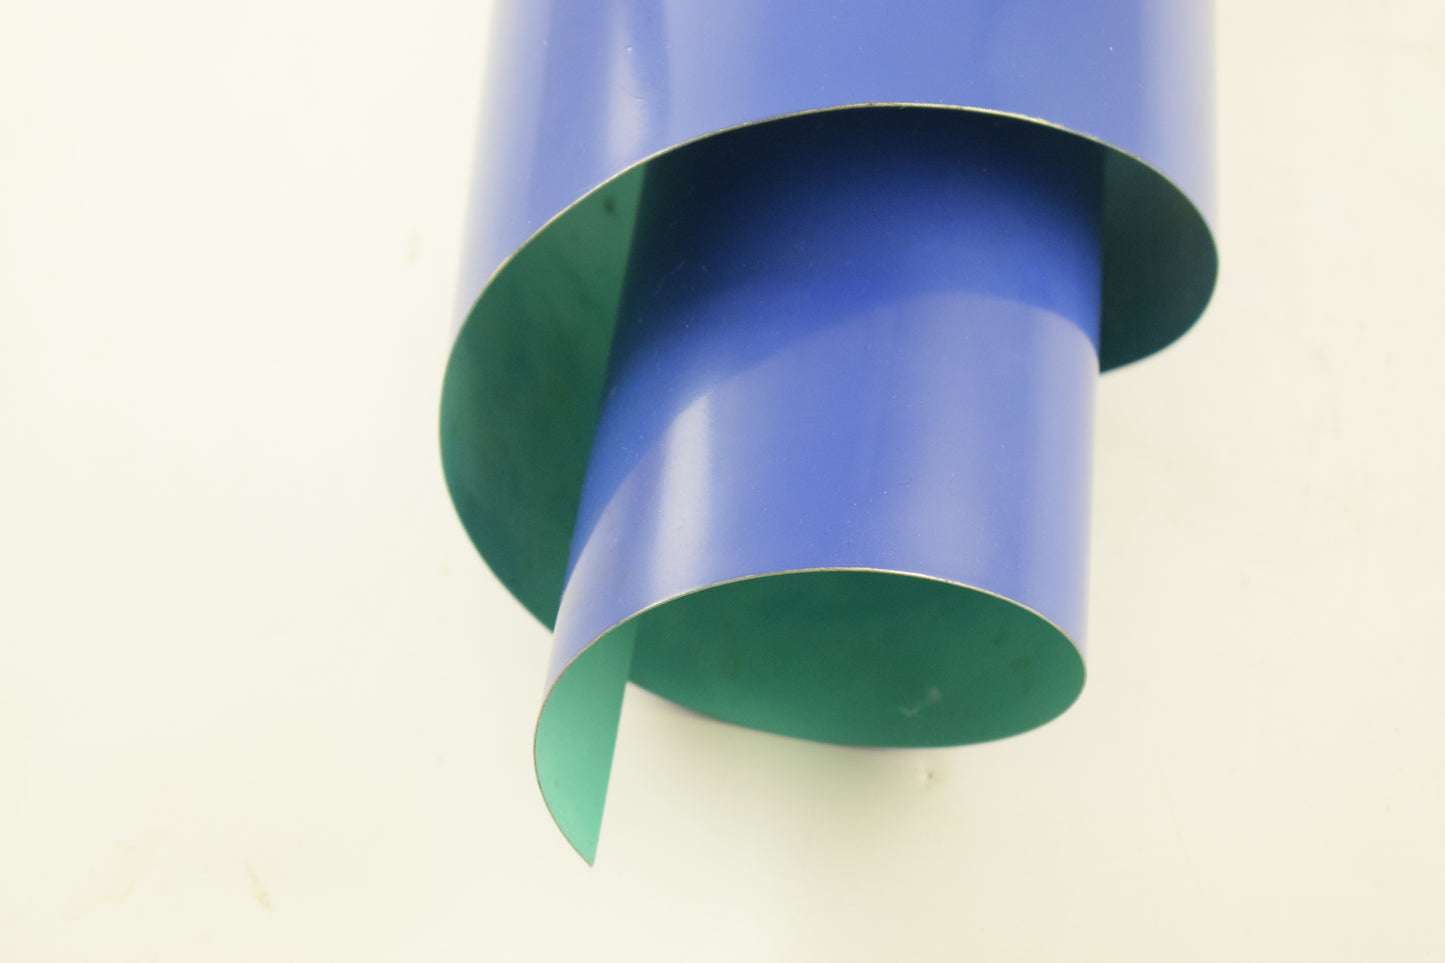 LYFA SWIRL by Simon Henningsen blue Danish design pendant lamp